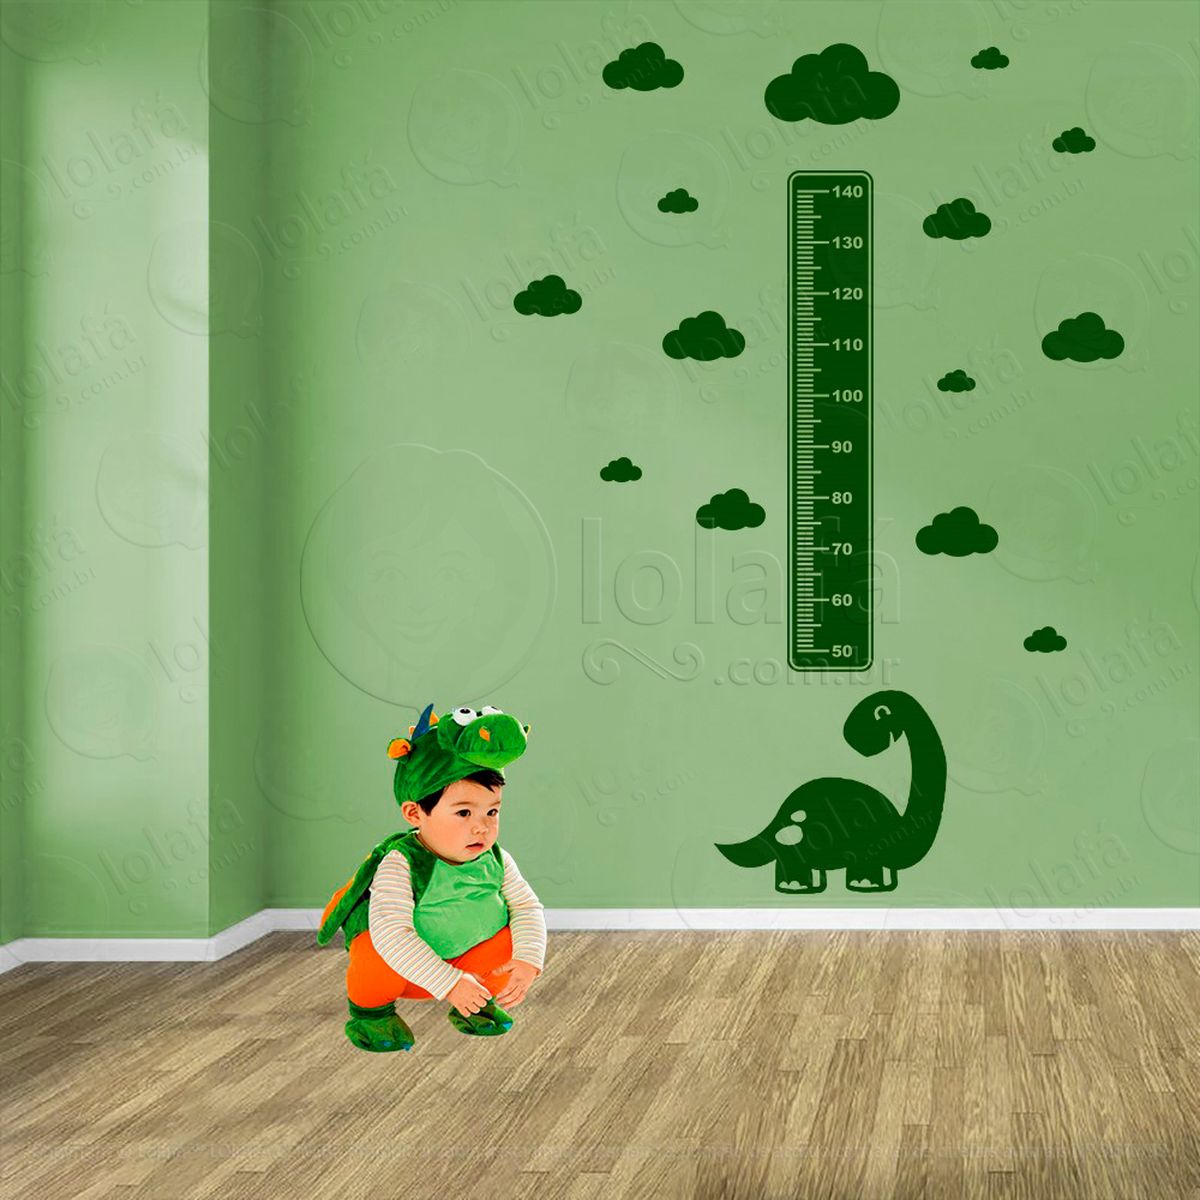 dinossauro e nuvens adesivo régua de crescimento infantil, medidor de altura para quarto, porta e parede - mod:821